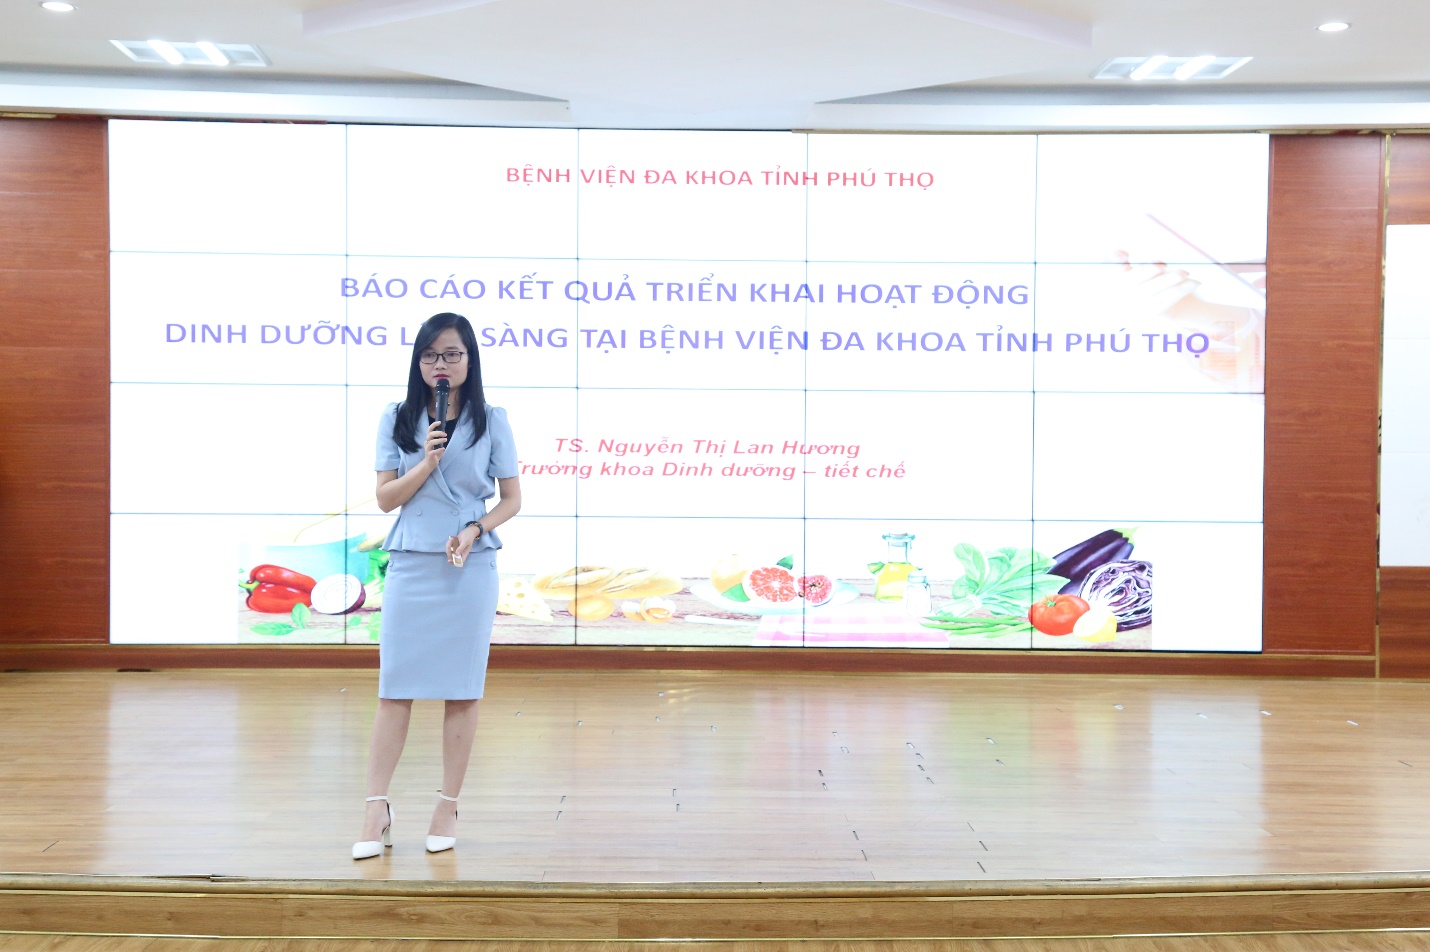 TS Nguyễn Thị Lan Hương - Trưởng khoa Dinh dưỡng tiết chế báo cáo tại hội thảo.